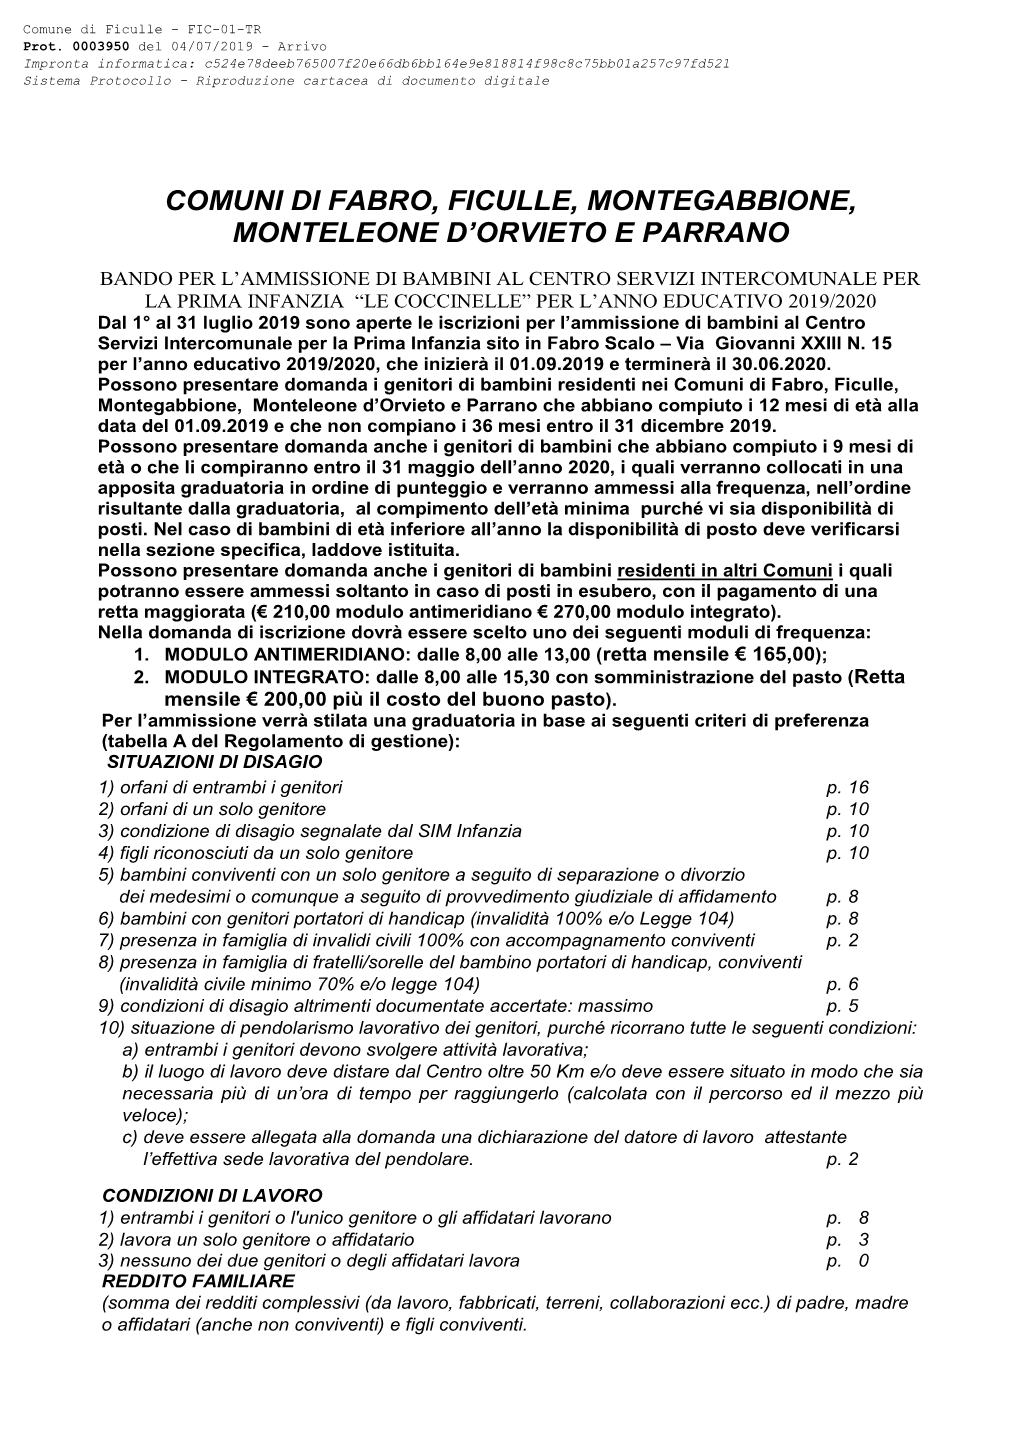 Comuni Di Fabro, Ficulle, Montegabbione, Monteleone D’Orvieto E Parrano